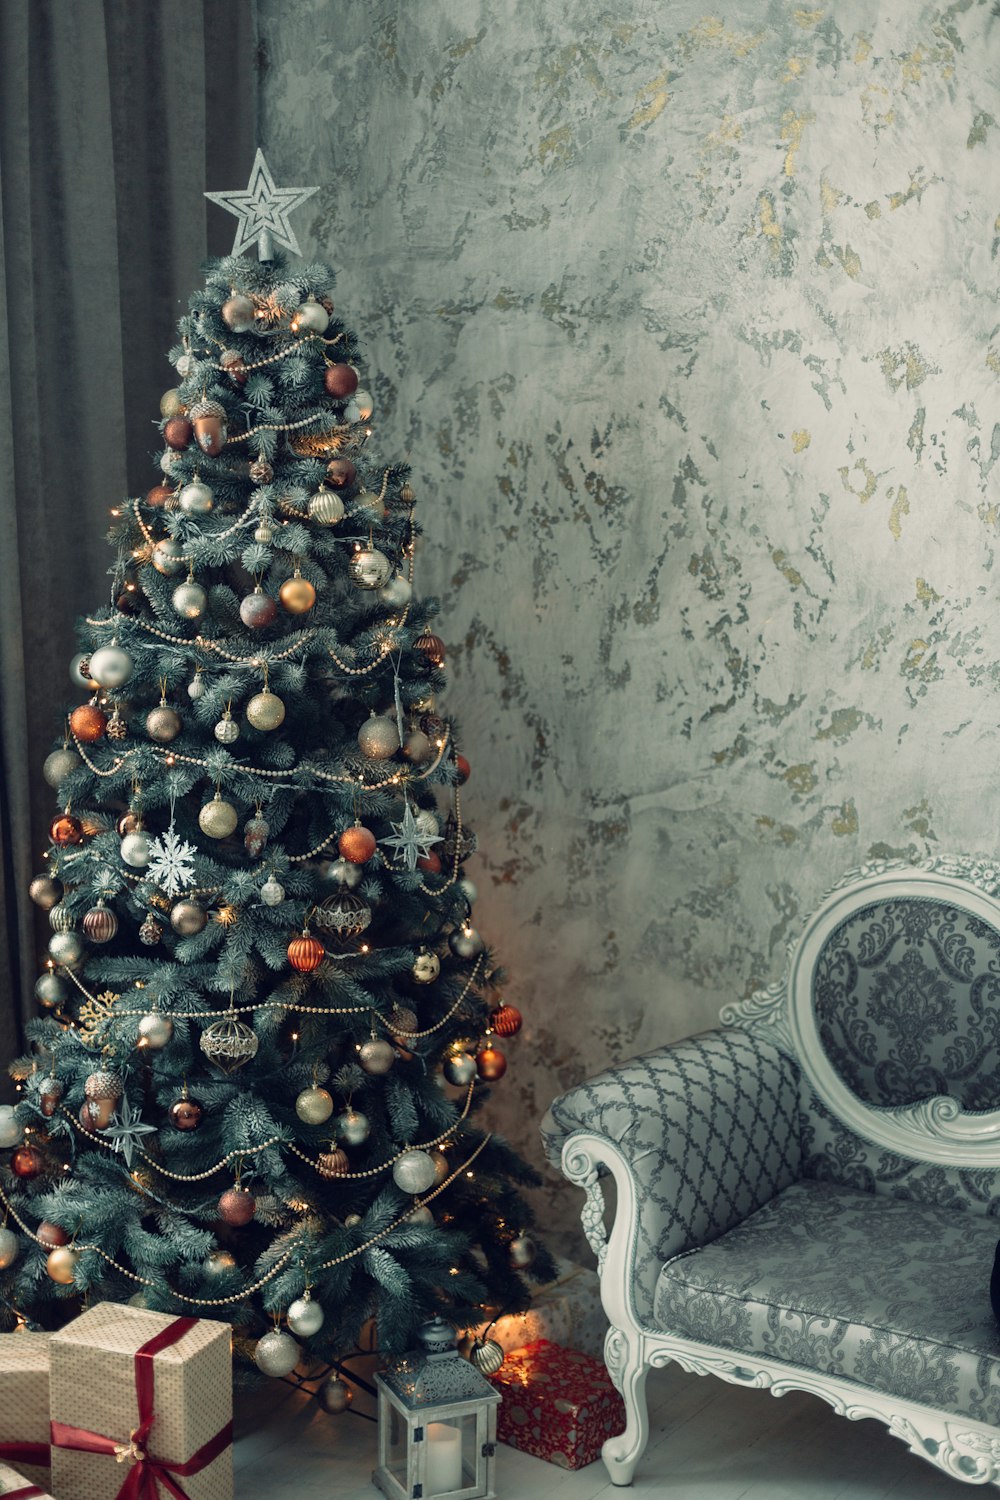 Mùa lễ hội tràn đầy sắc màu và niềm vui. Hãy đón mùa Noel bằng những hình cây thông Noel xanh với quả cầu đỏ và trắng. Hình ảnh sẽ đưa bạn vào thế giới của niềm vui và giáng sinh với những hình ảnh đẹp và tràn đầy sự sống động.